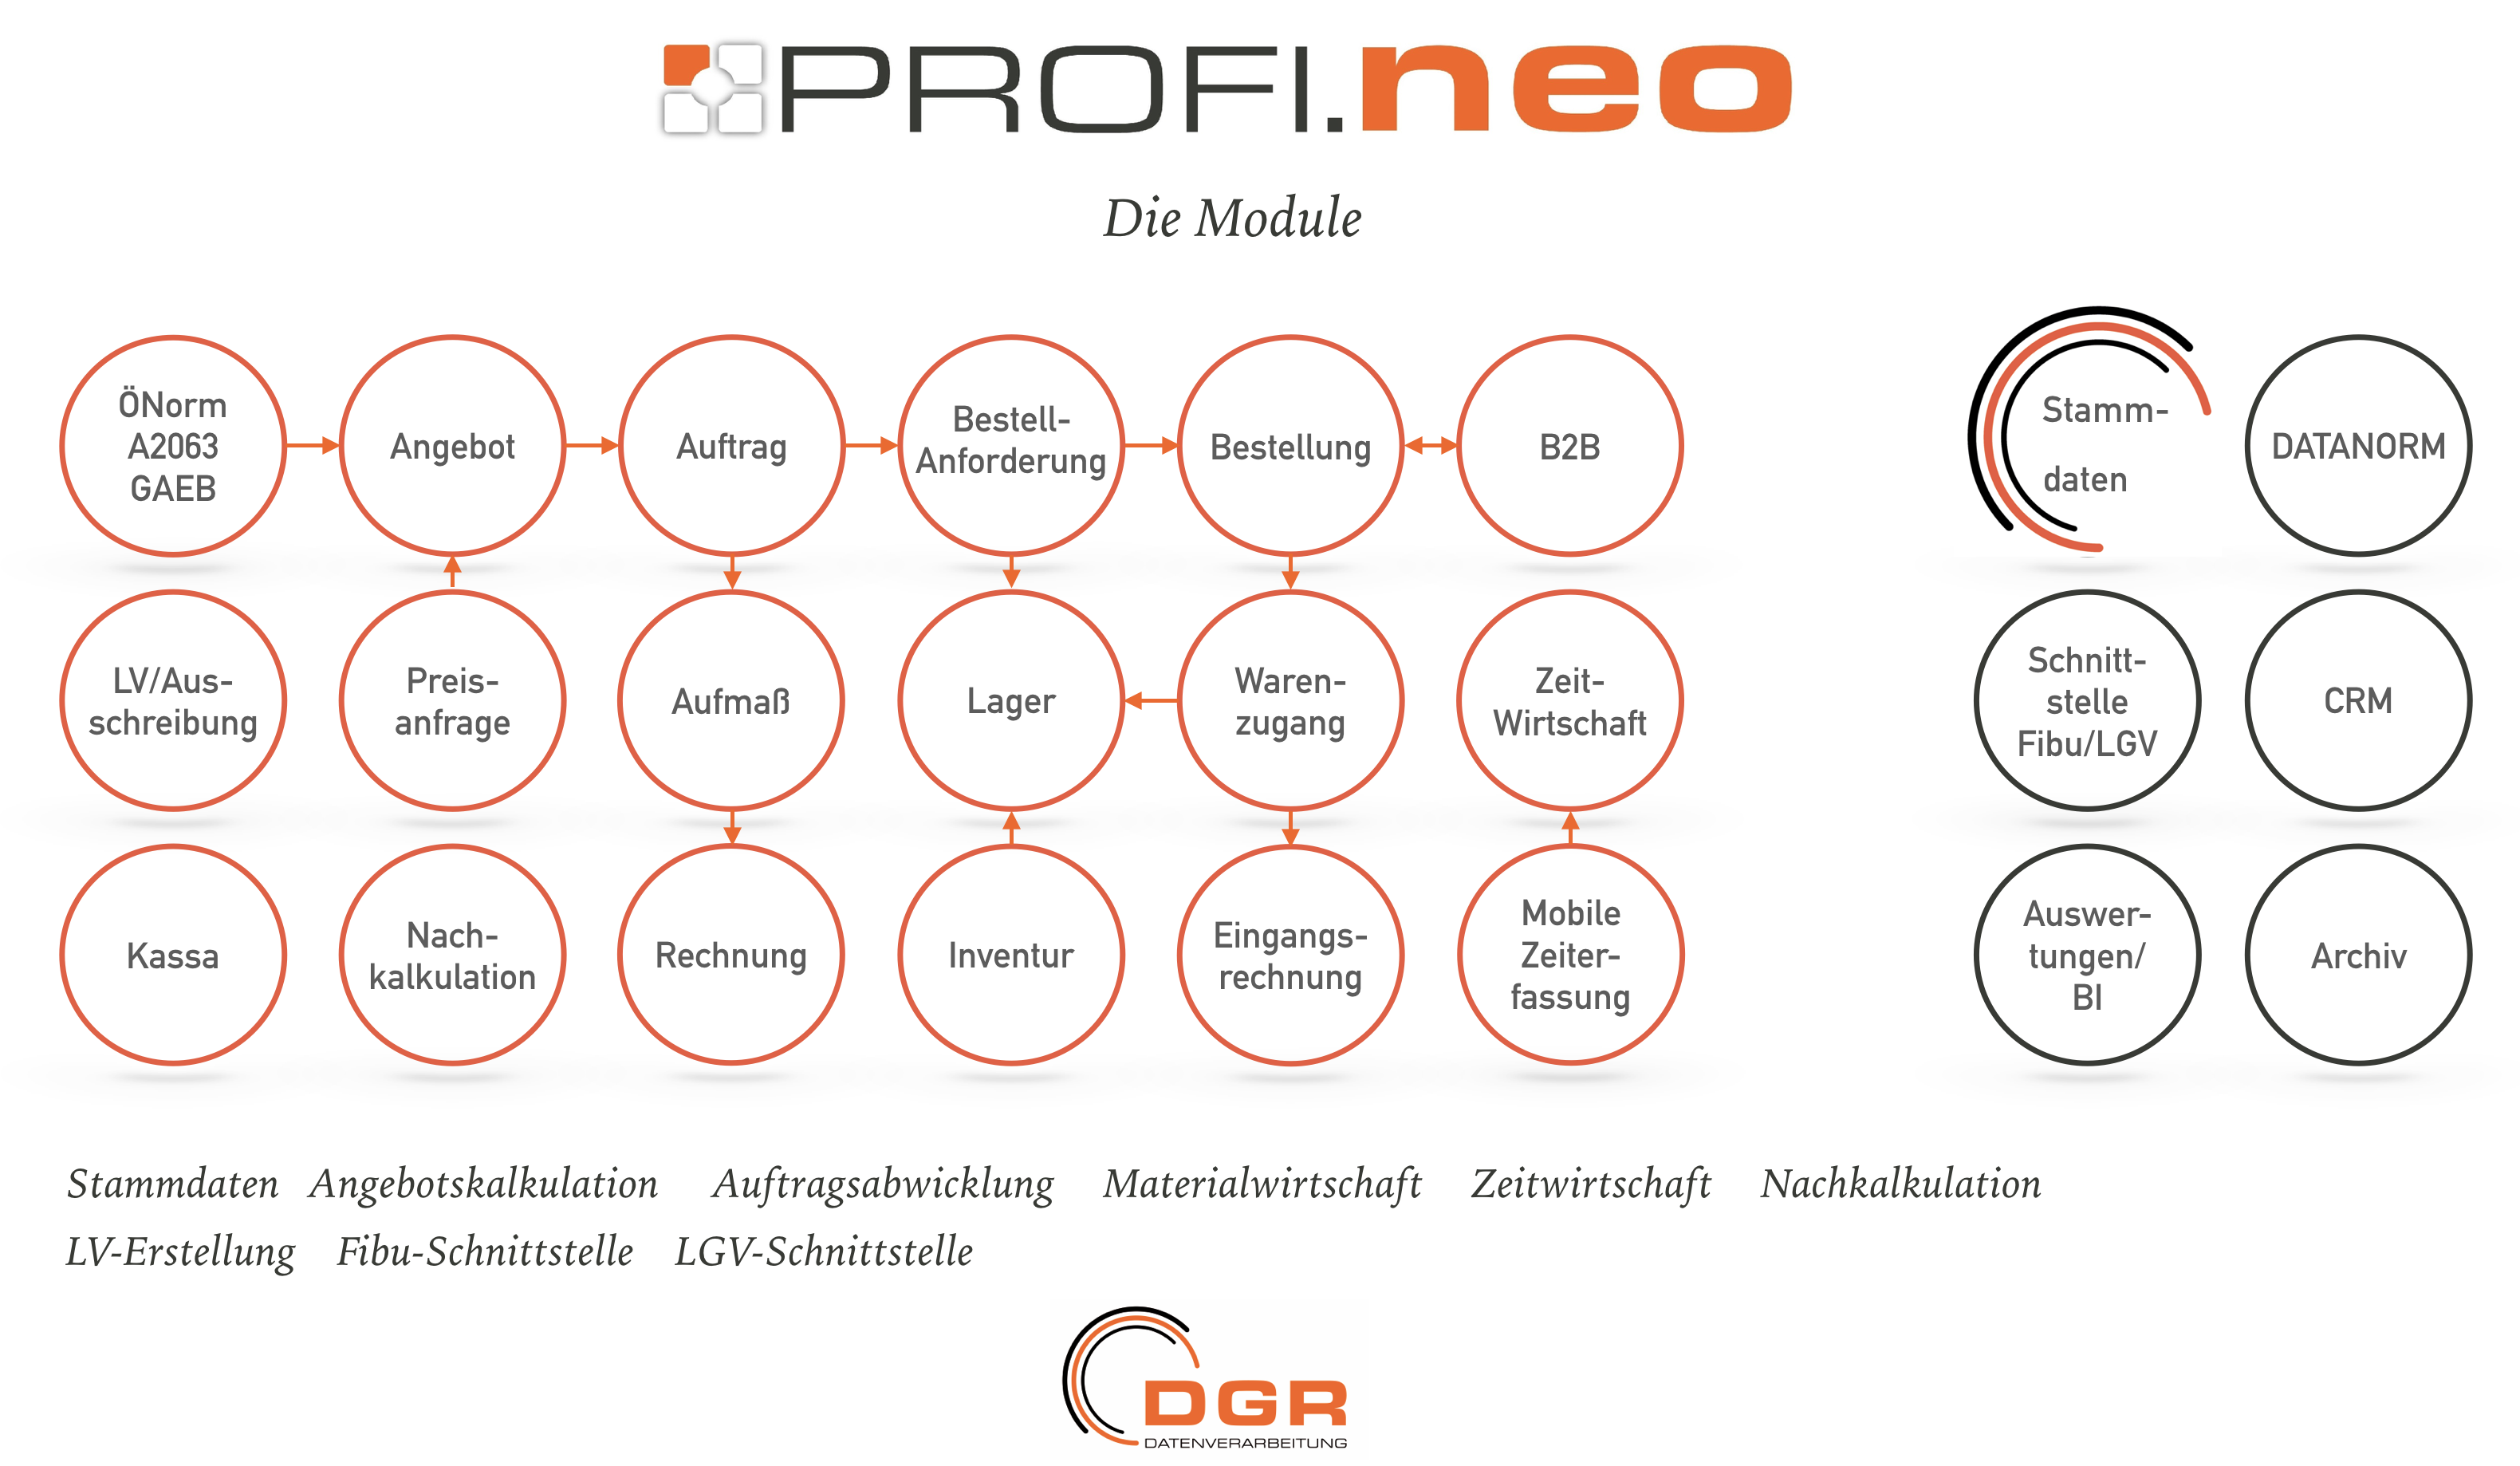 Eine Übersicht über alle Module von PROFI.neo